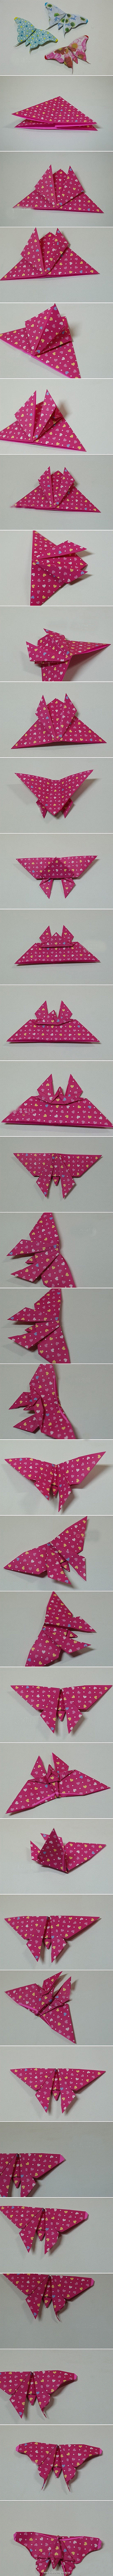 折纸蝴蝶教程